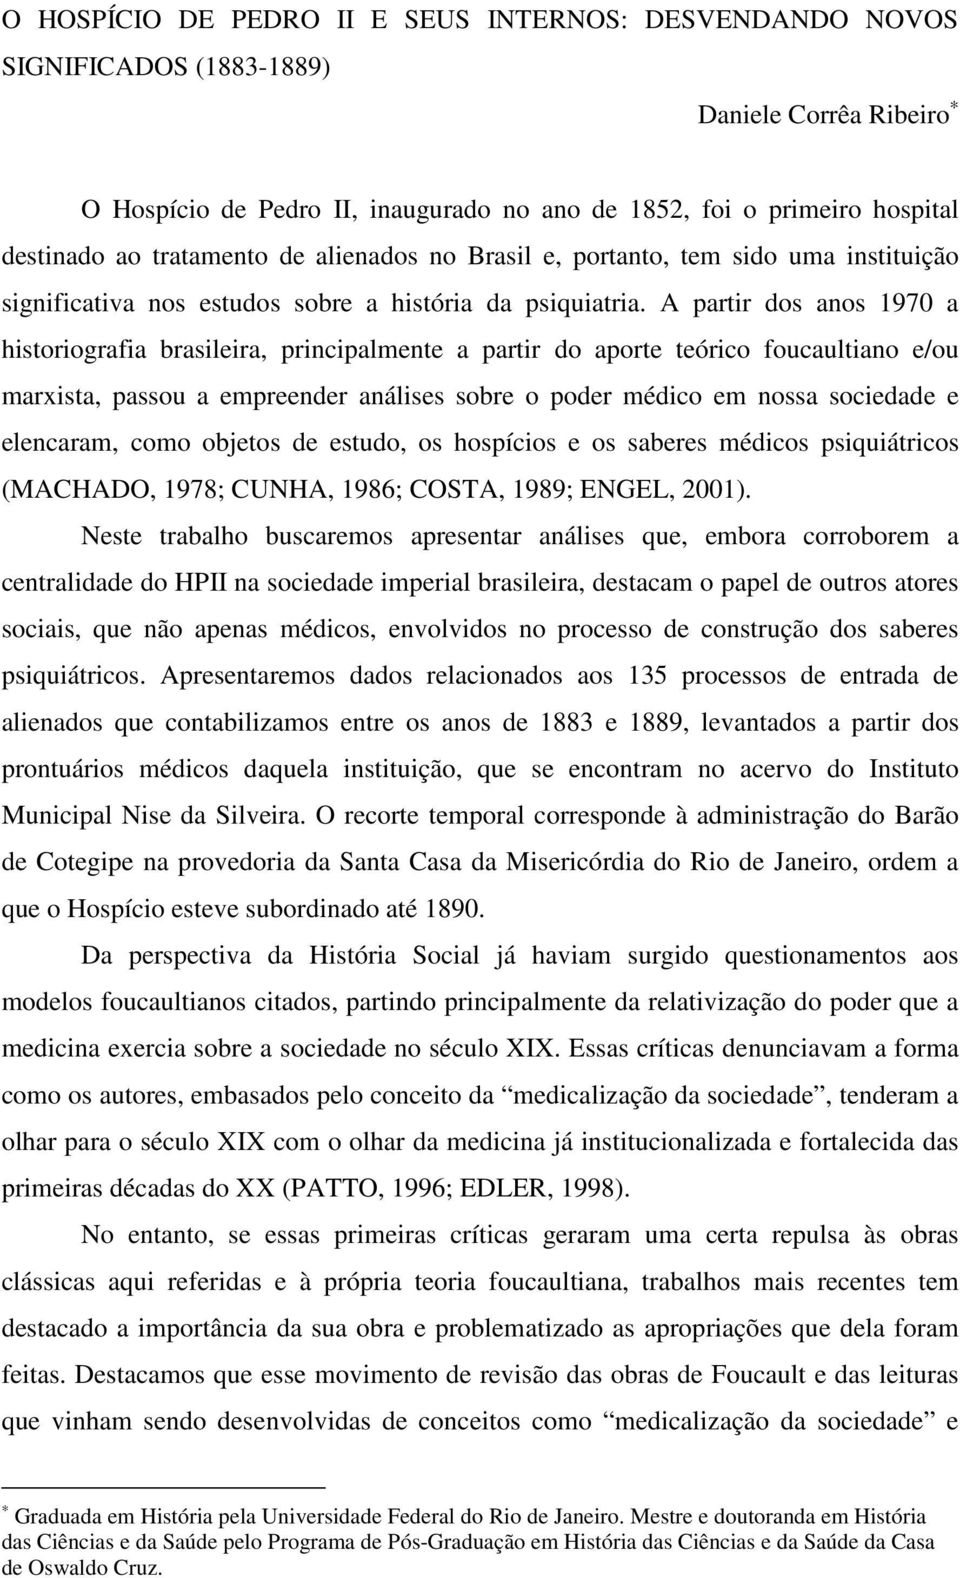 A partir dos anos 1970 a historiografia brasileira, principalmente a partir do aporte teórico foucaultiano e/ou marxista, passou a empreender análises sobre o poder médico em nossa sociedade e